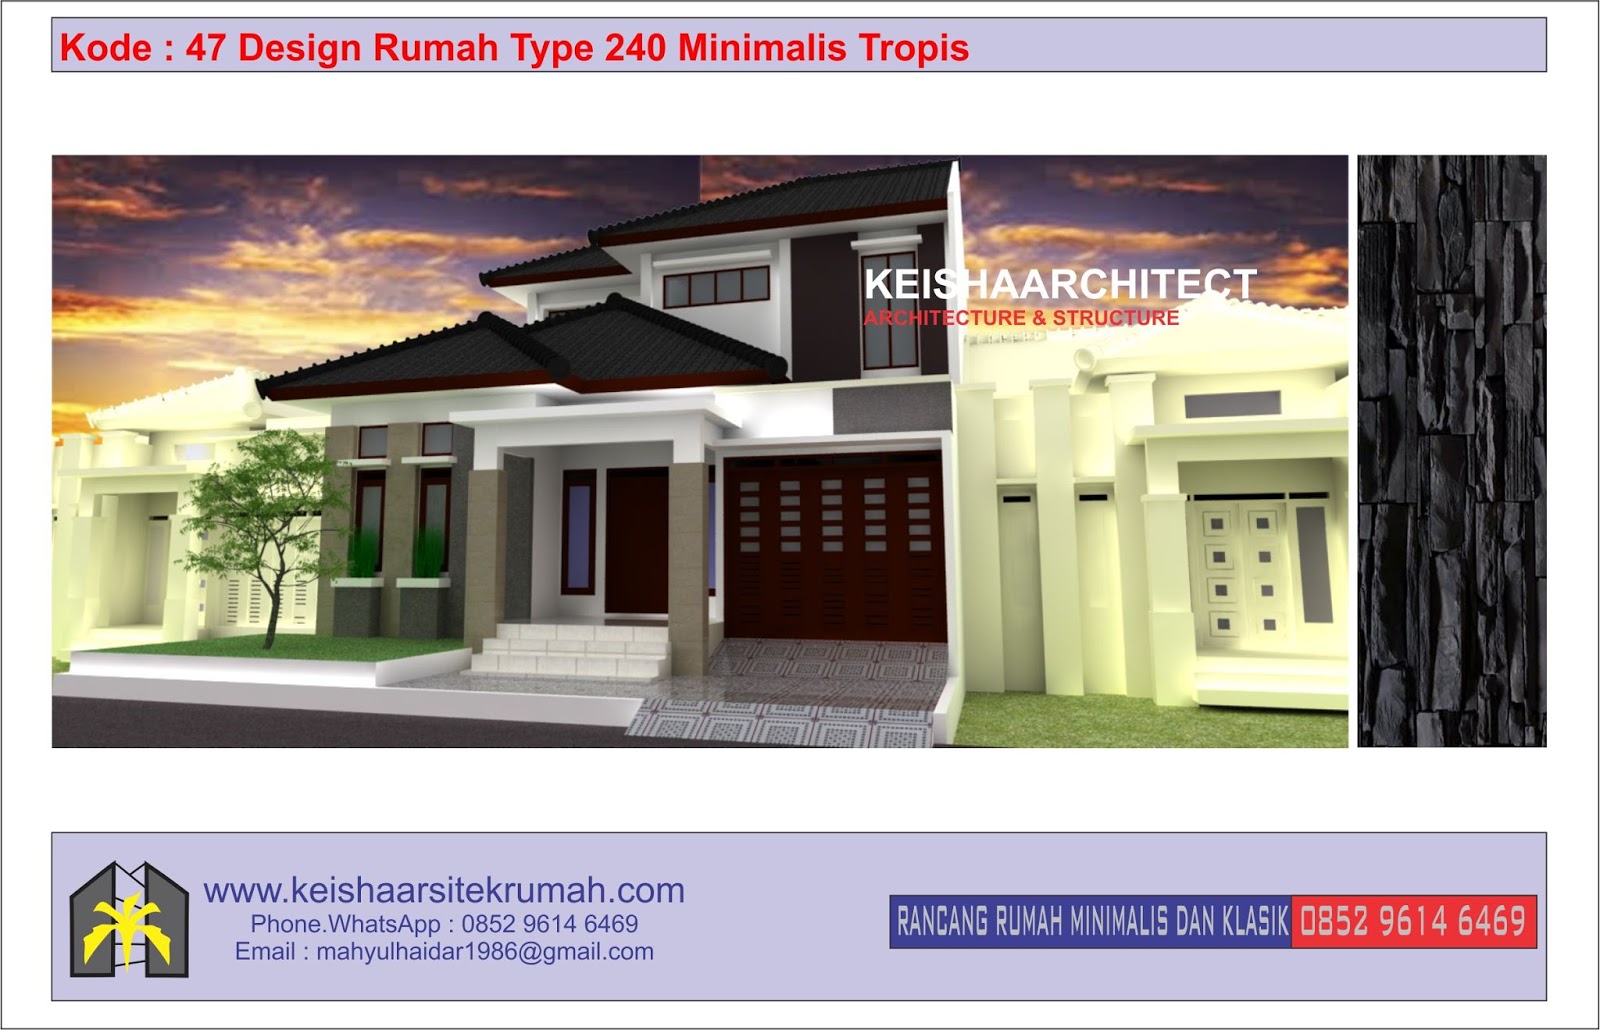 Desain Rumah Minimalis Klasik Dan Rab Tahun 2020 Www